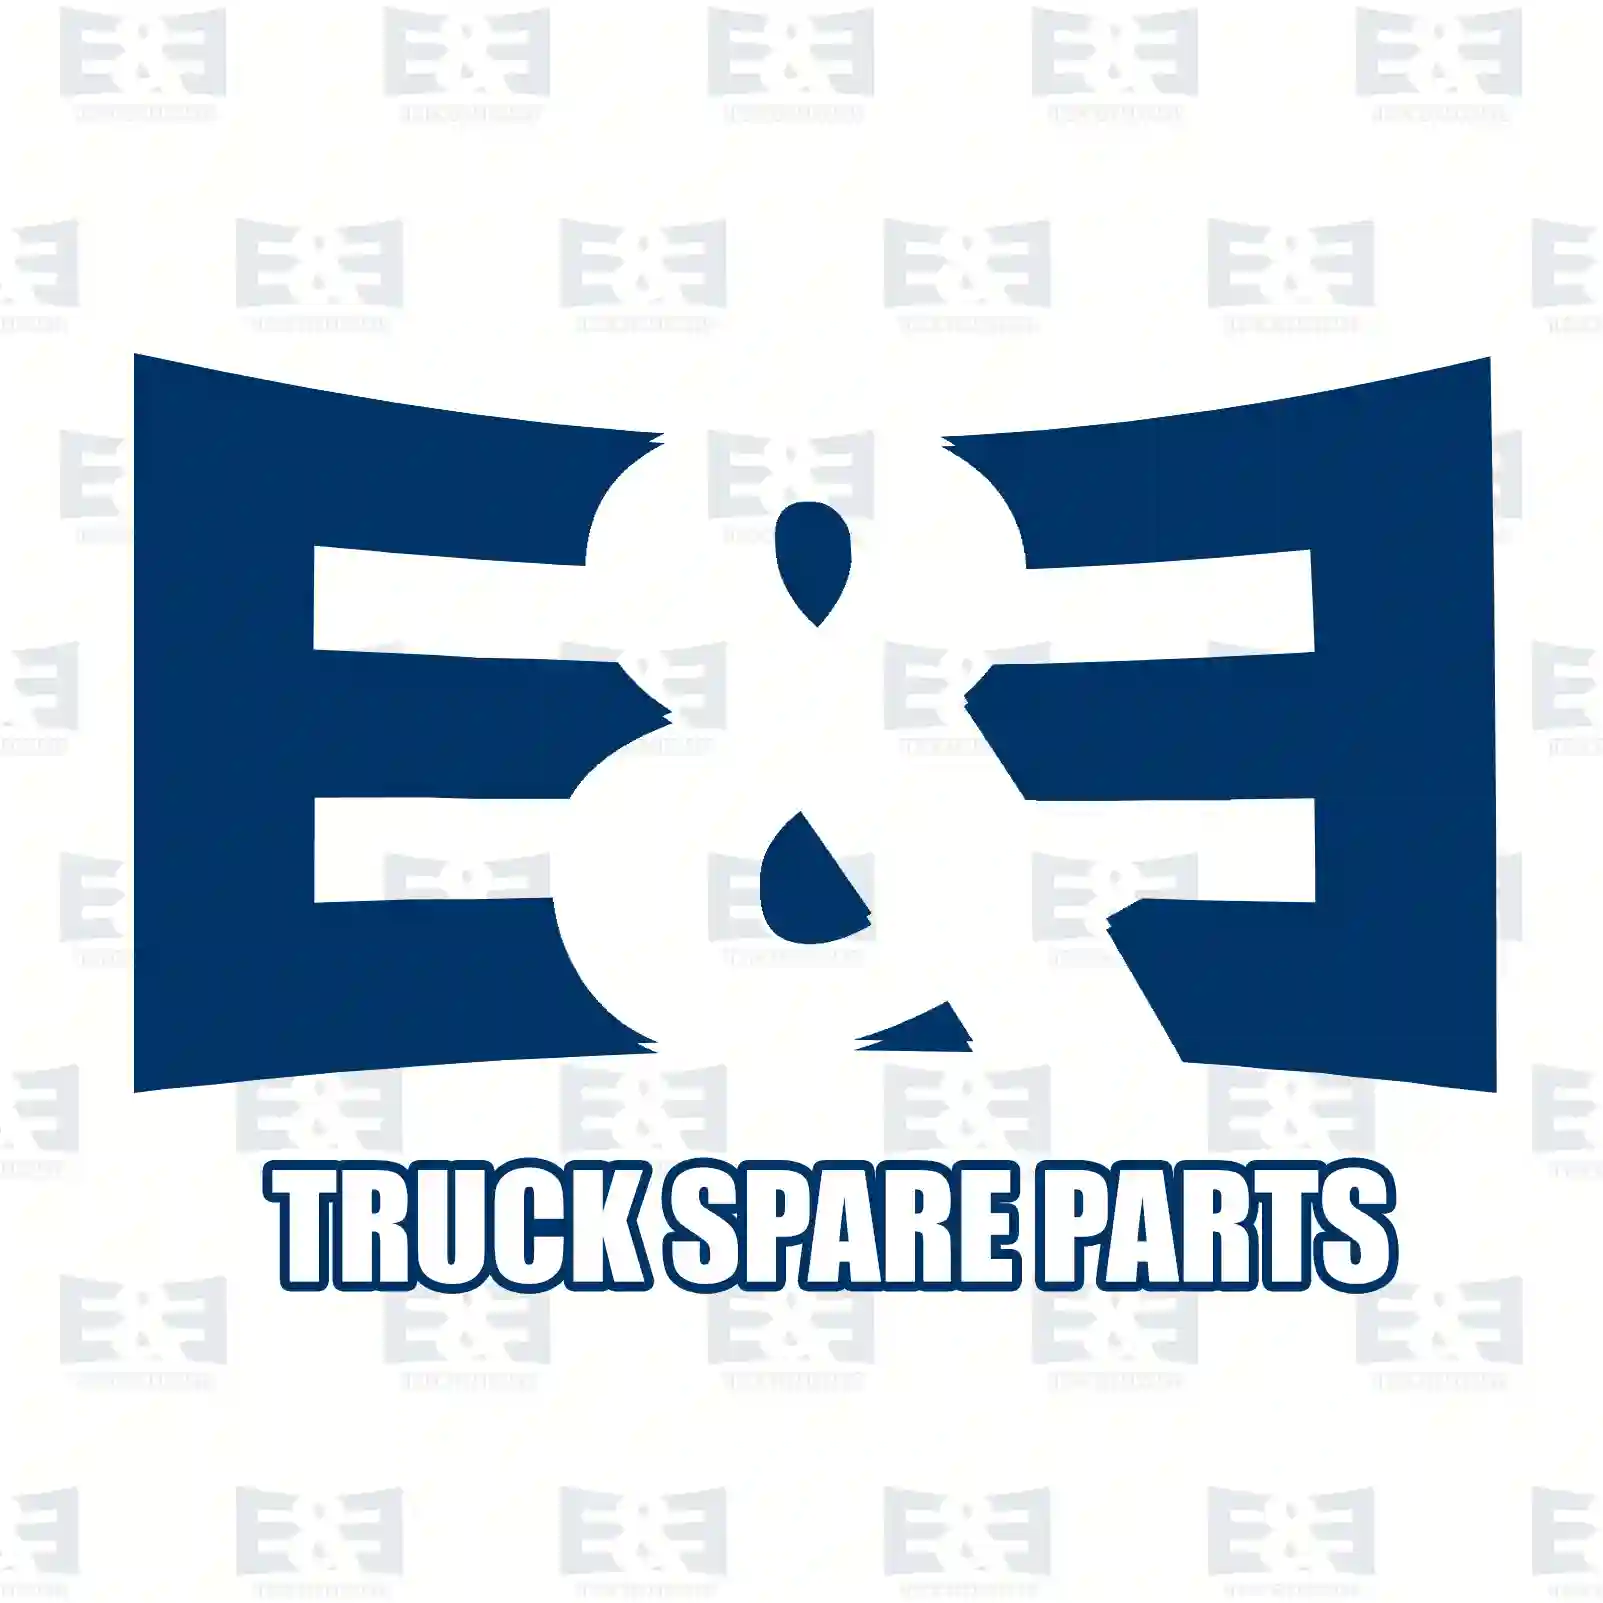 Shock absorber, 2E2283075, 3953643, 6771501, , , ||  2E2283075 E&E Truck Spare Parts | Truck Spare Parts, Auotomotive Spare Parts Shock absorber, 2E2283075, 3953643, 6771501, , , ||  2E2283075 E&E Truck Spare Parts | Truck Spare Parts, Auotomotive Spare Parts